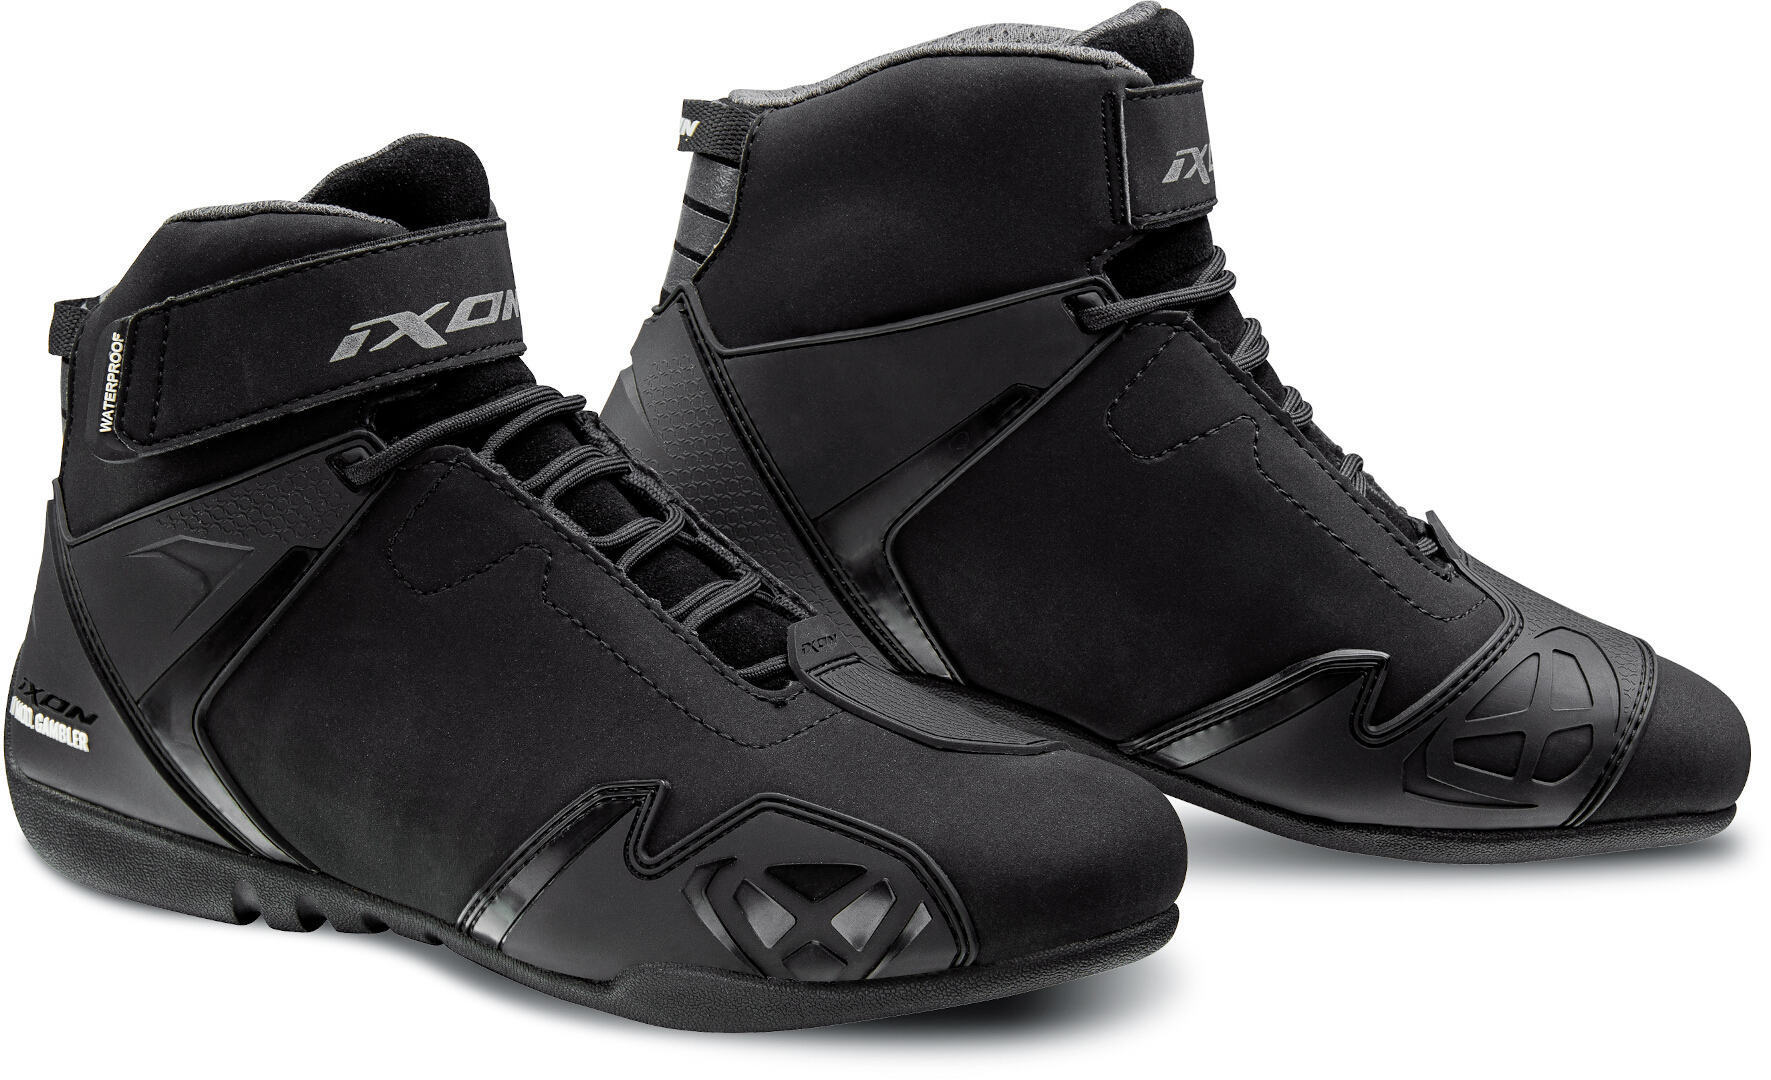 Обувь Ixon Gambler WP для женщин для мотоцикла, черная цена и фото